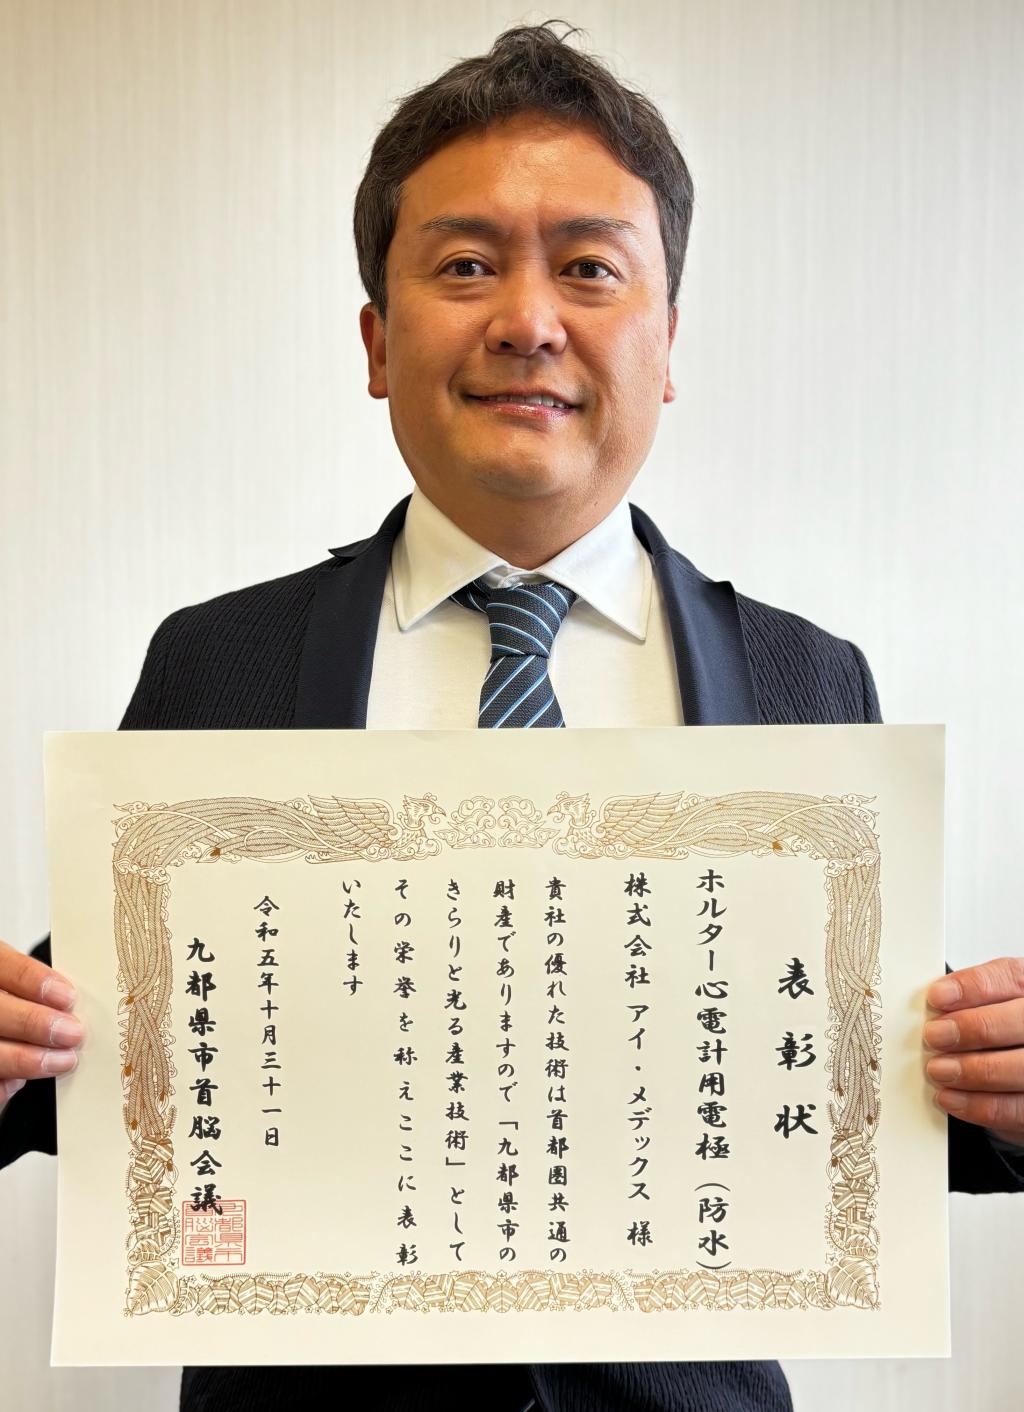 「九都県市のきらりと光る産業技術」 表彰を受賞